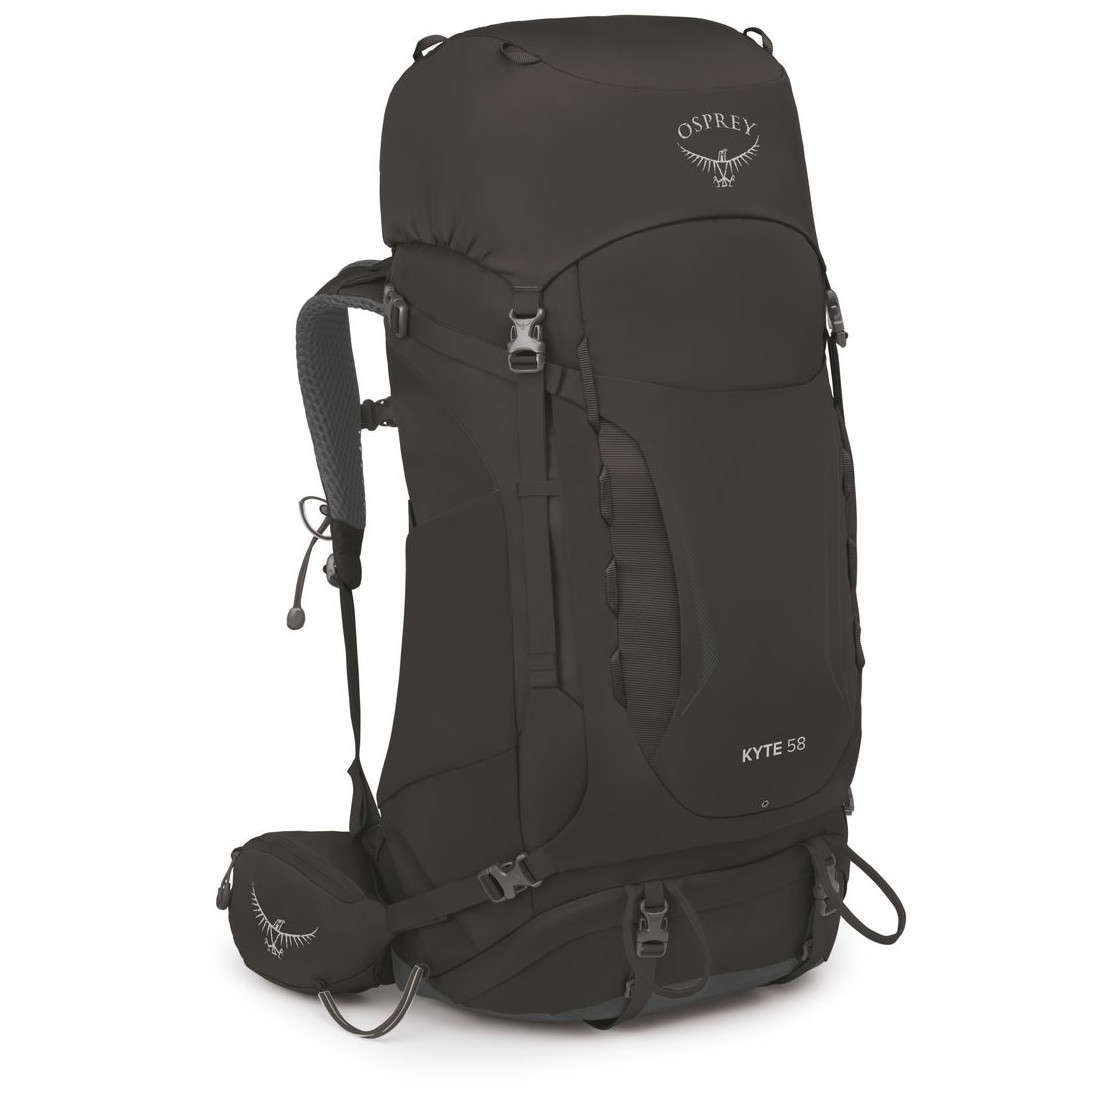 Dámský turistický batoh Osprey Kyte 58 Velikost zad batohu: XS/S / Barva: černá